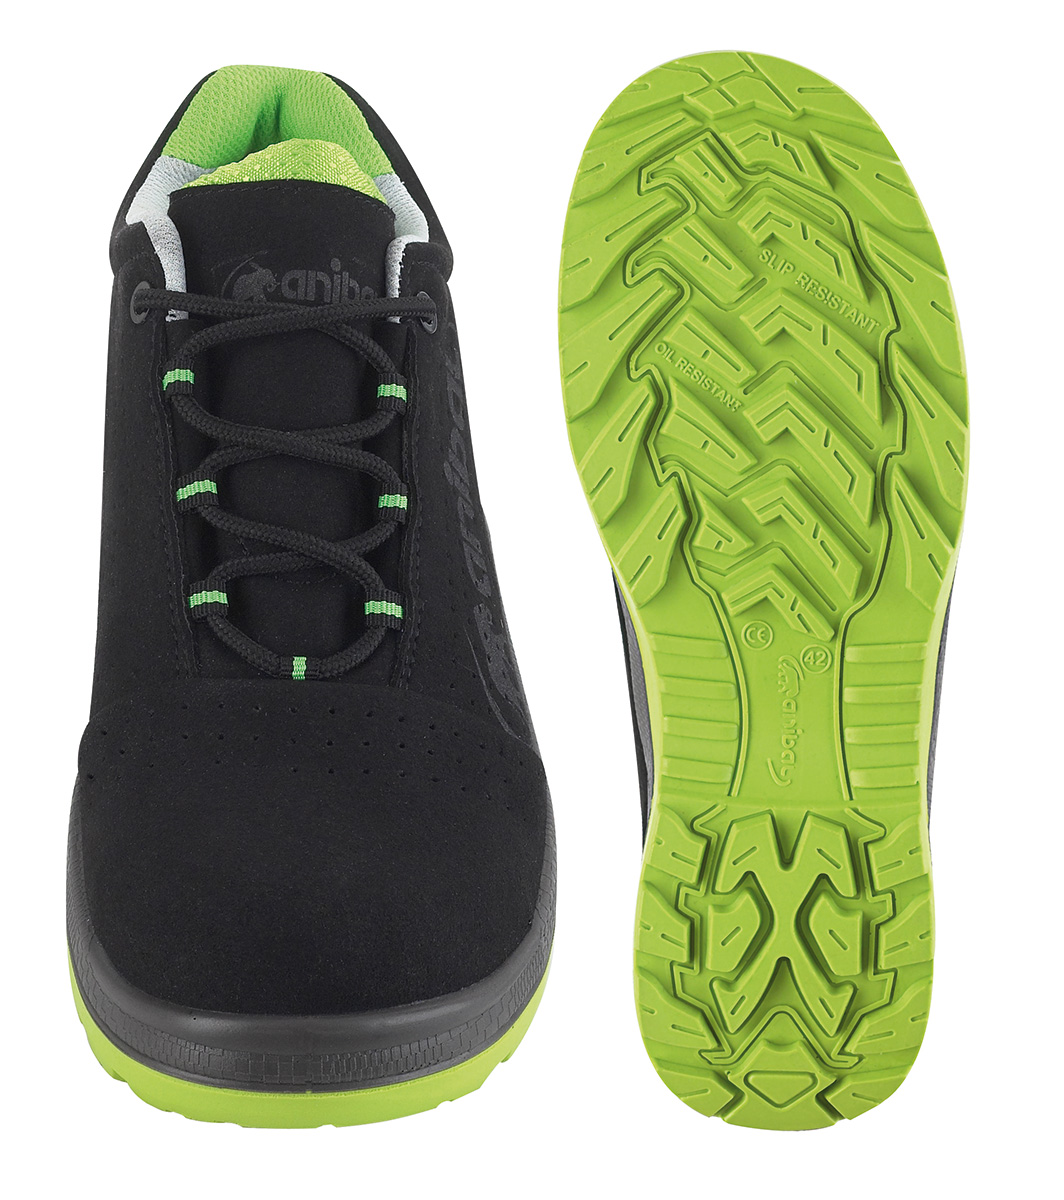 1688-ZU PRO Calzado de Seguridad Light Evolution  Zapato mod. 